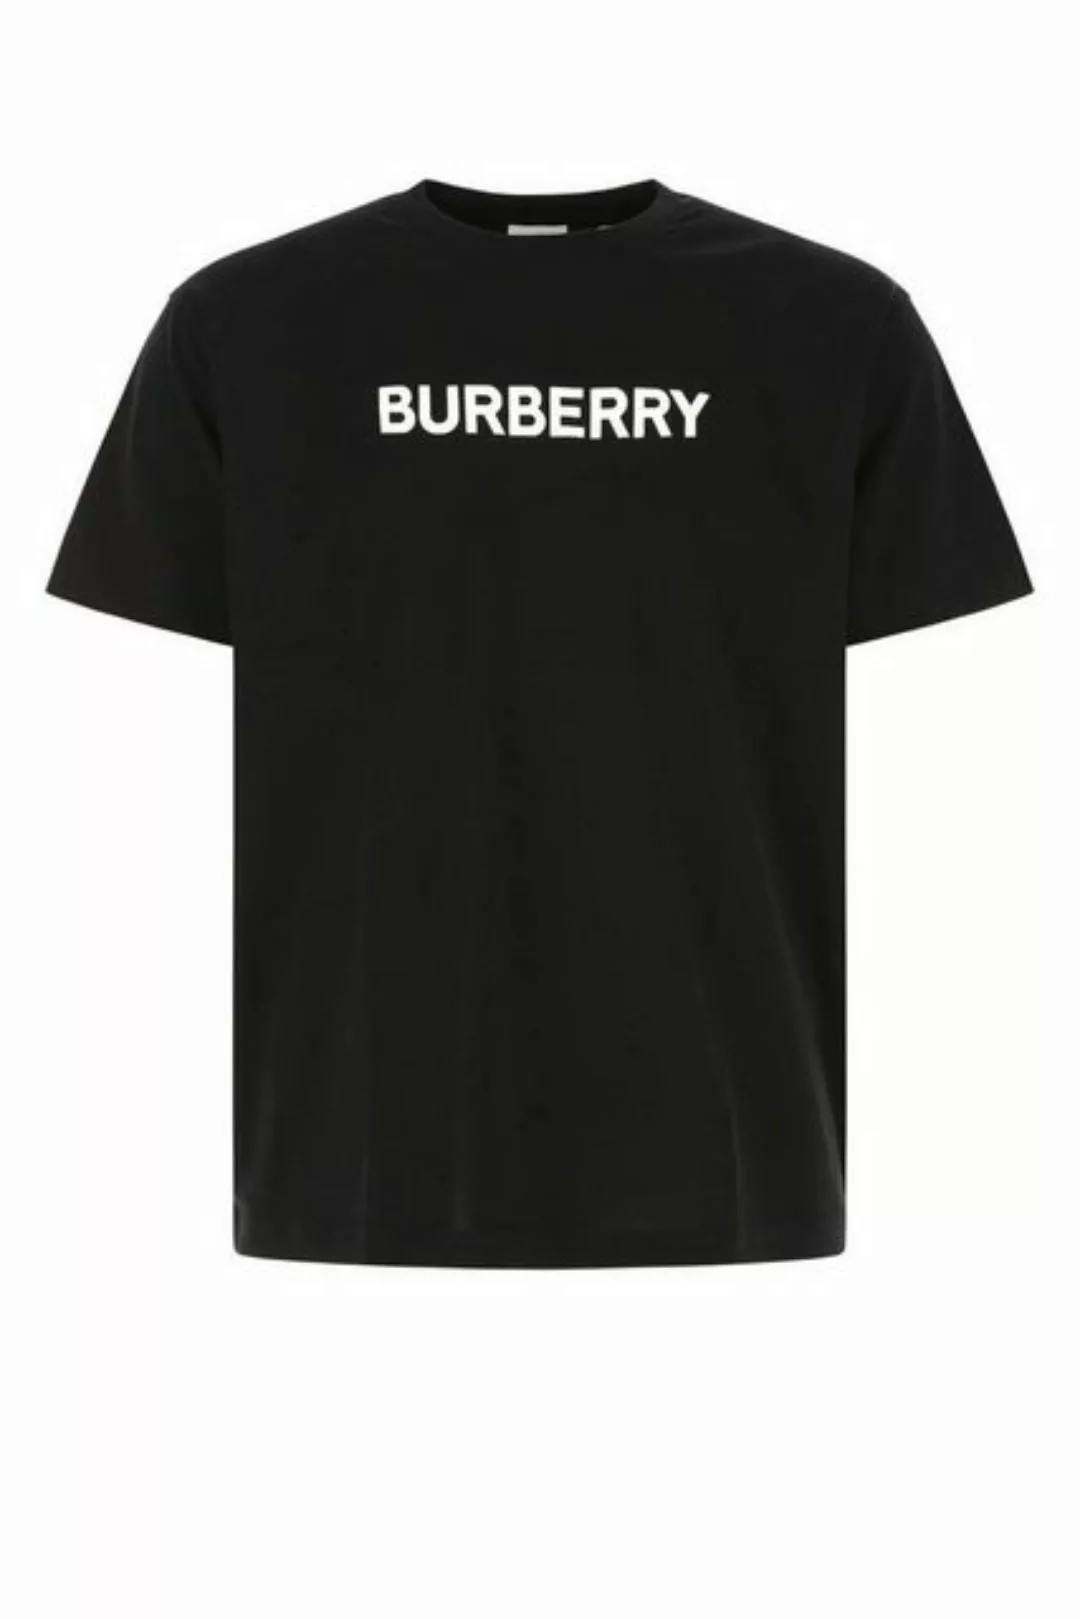 BURBERRY T-Shirt Black ‘Harriston’ T-SHIRT günstig online kaufen